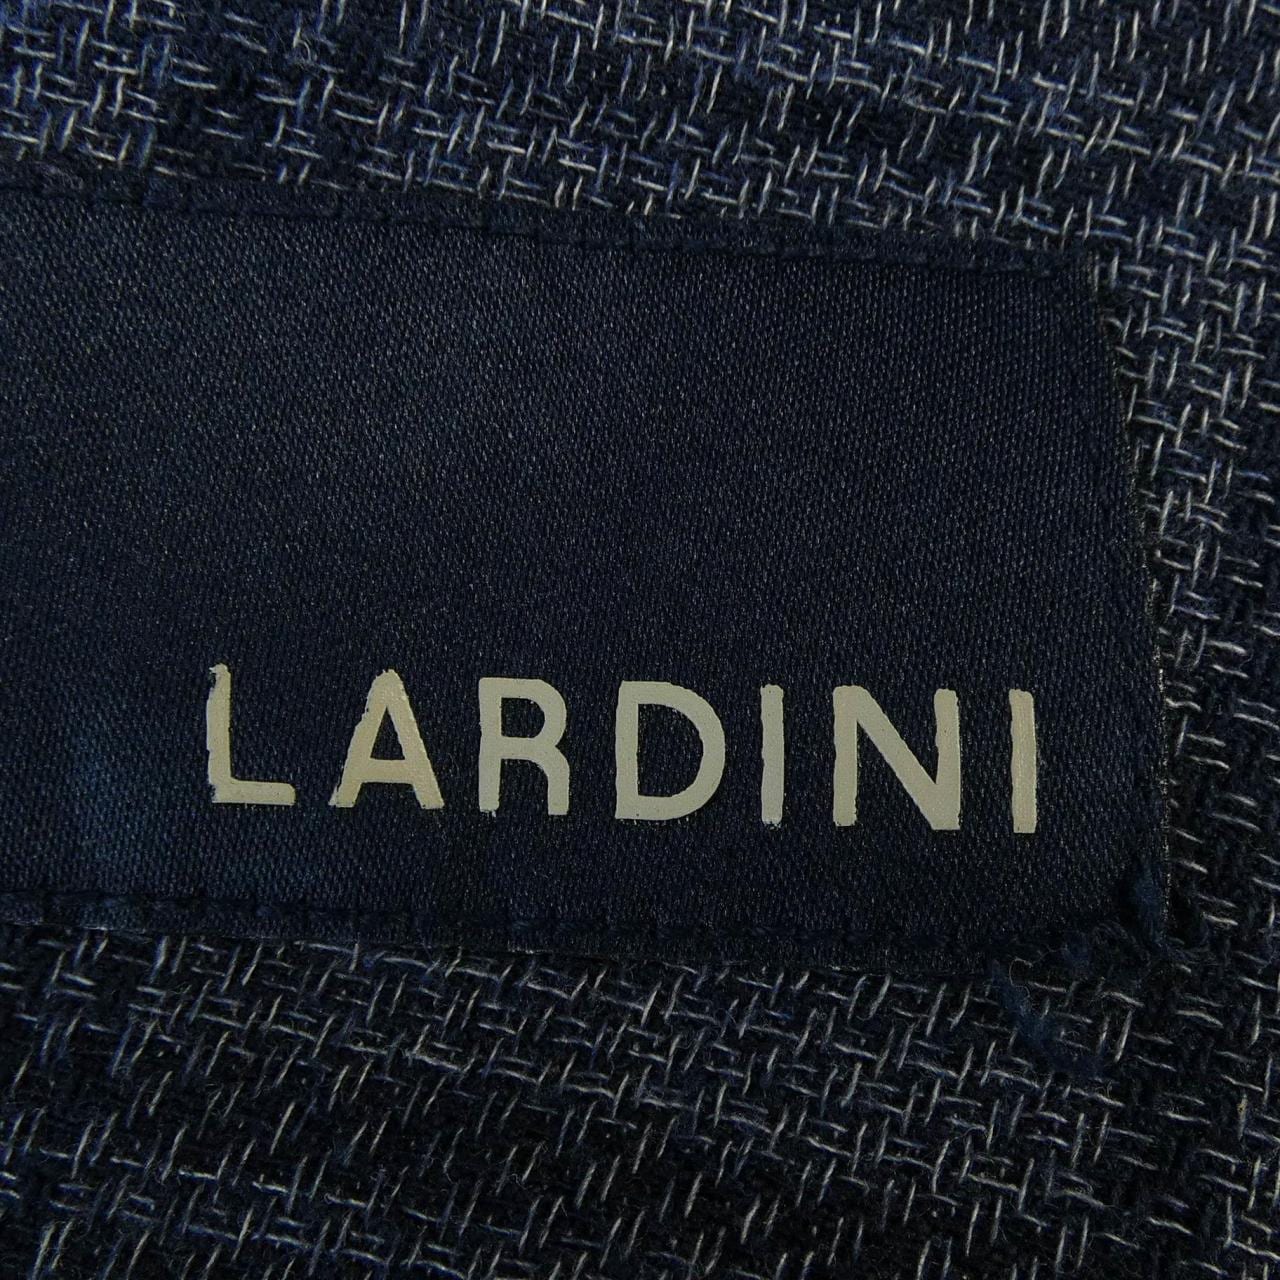 ラルディーニ LARDINI ベスト